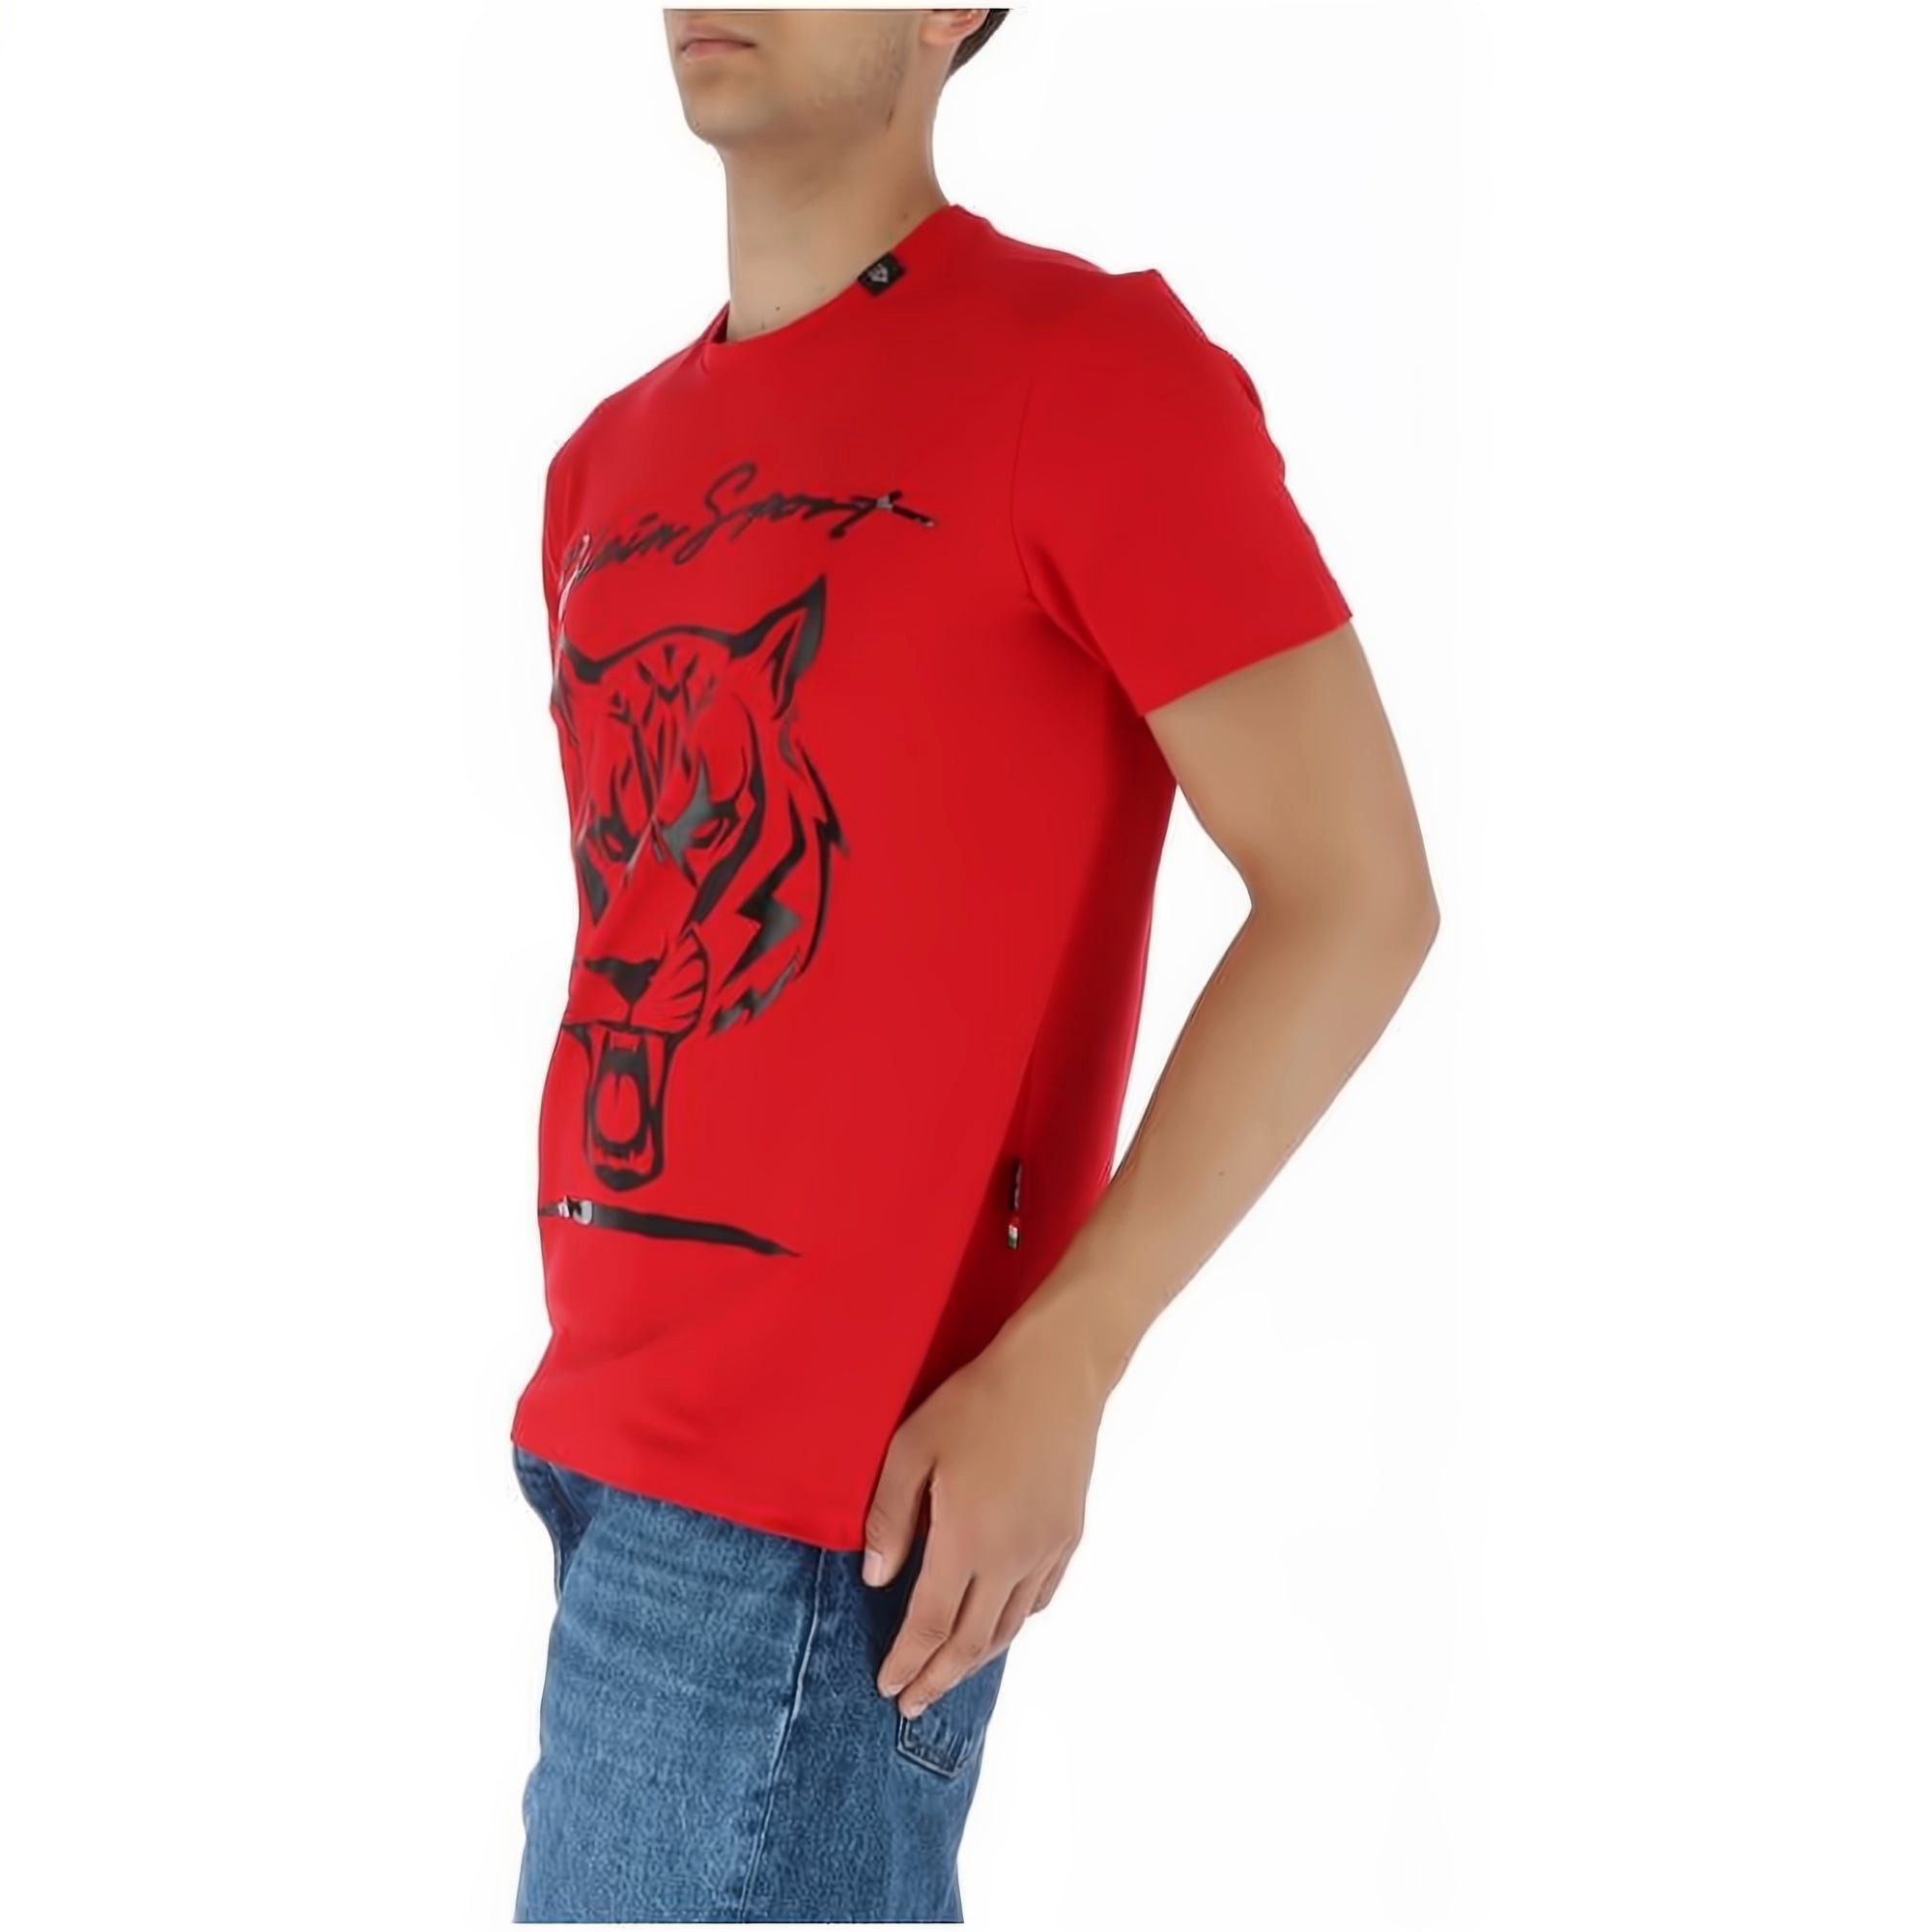 PLEIN SPORT T-Shirt ROUND NECK hoher vielfältige Tragekomfort, Farbauswahl Look, Stylischer